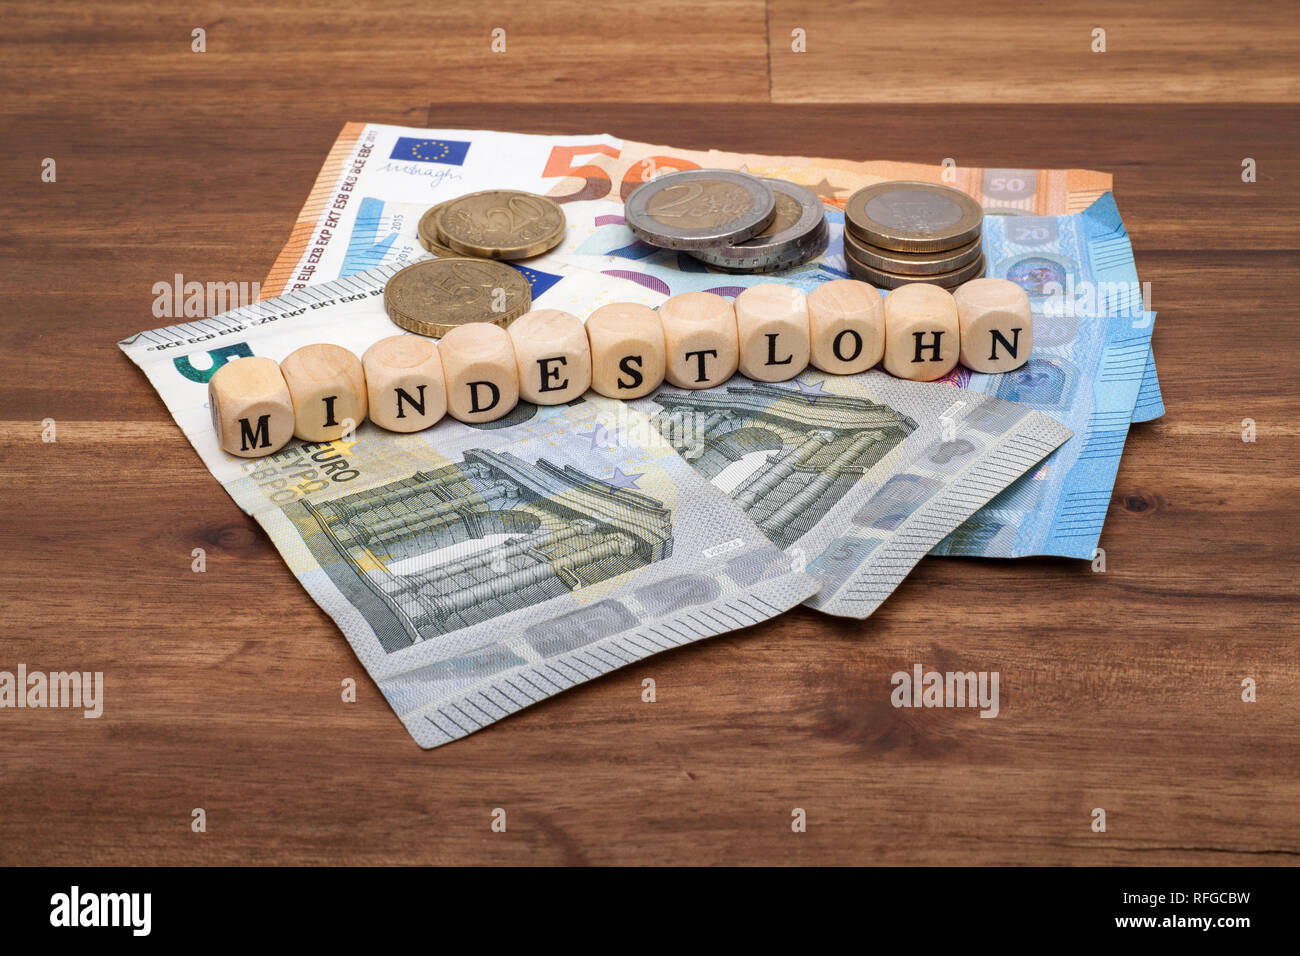 Die Euro Geldscheine und Münzen liegen auf dem Tisch mit dem Wort Mindestlohn Stock Photo